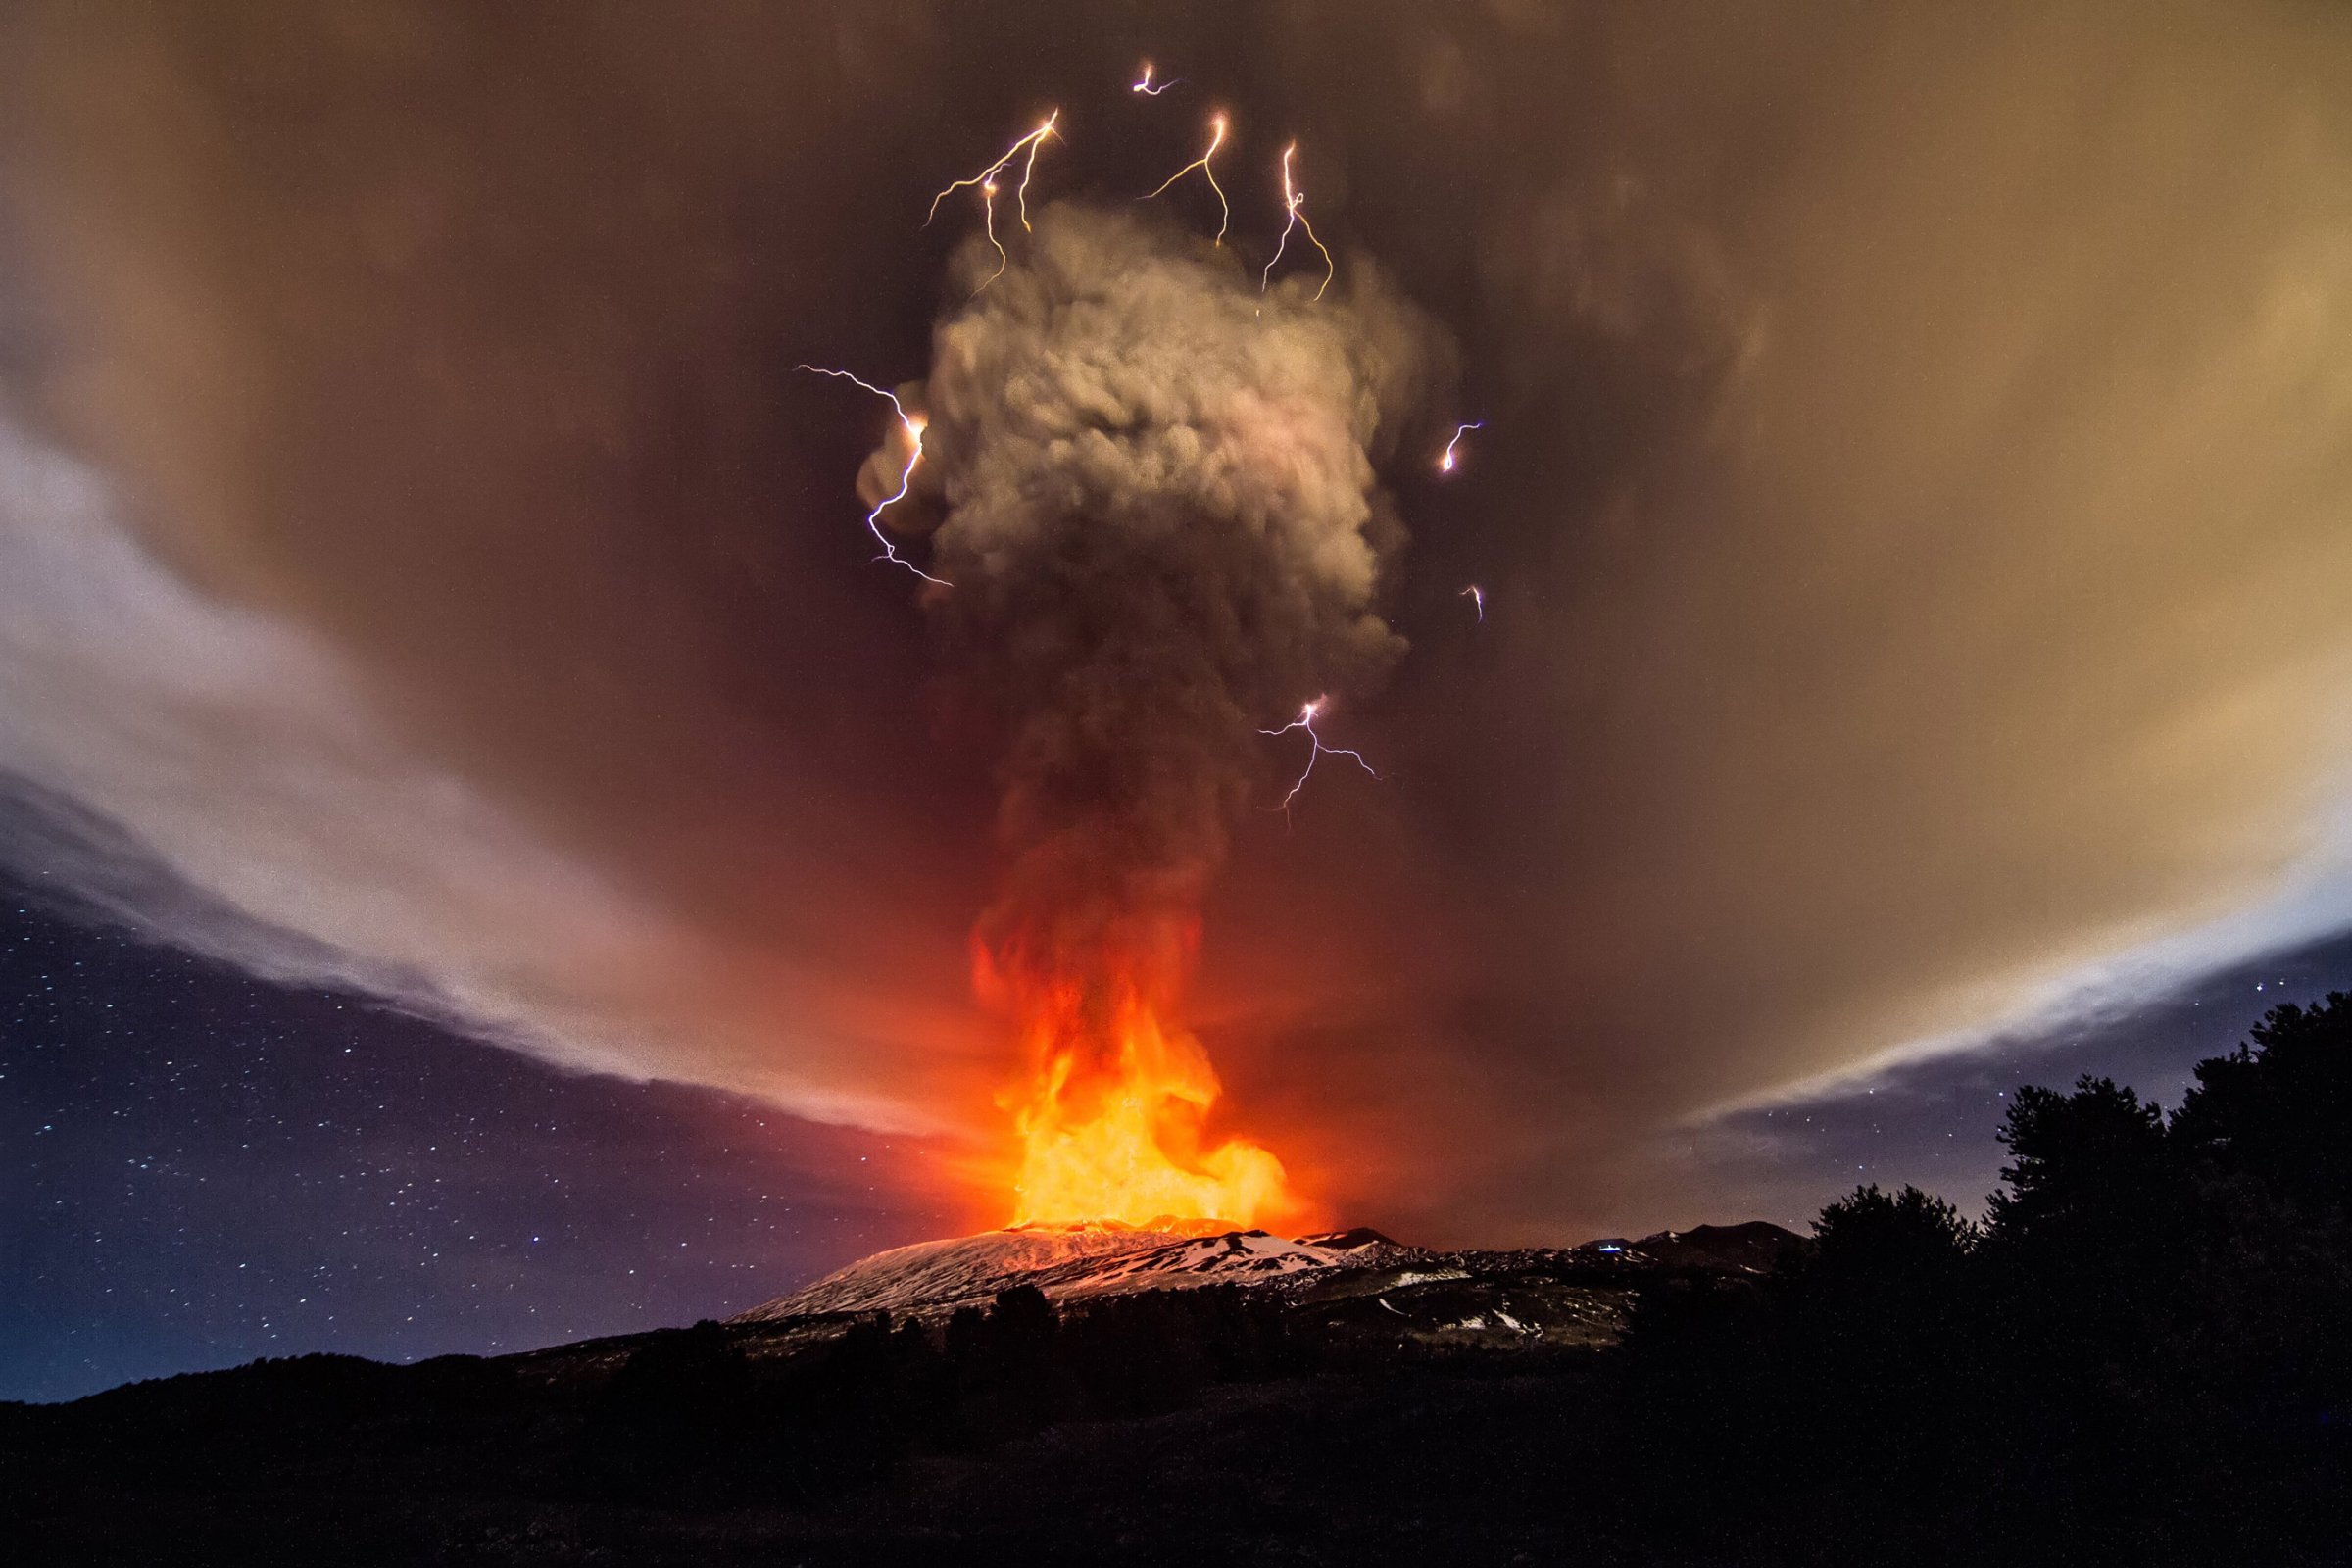 A volcanic eruption at Mount Etna's Vorgaine crater on Dec. 03, 2015 in Sicily.